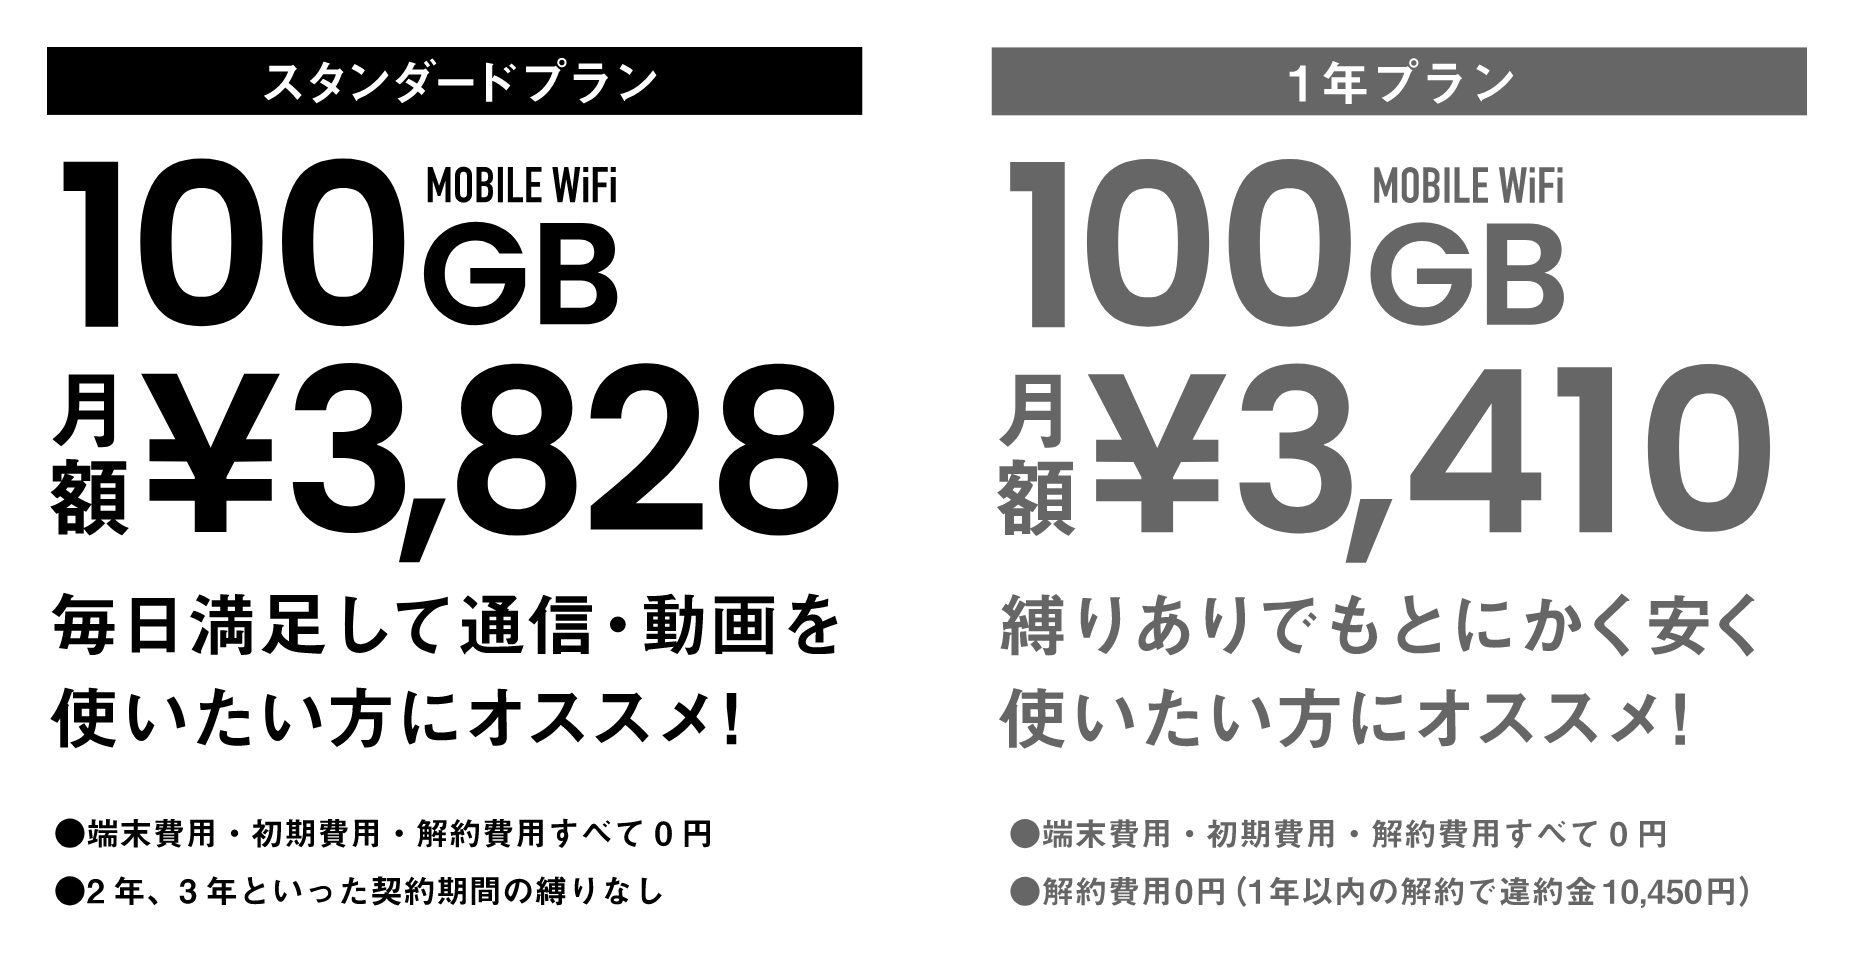 超格安WiFi | 月額3,828円で100GB、契約期間縛りなし